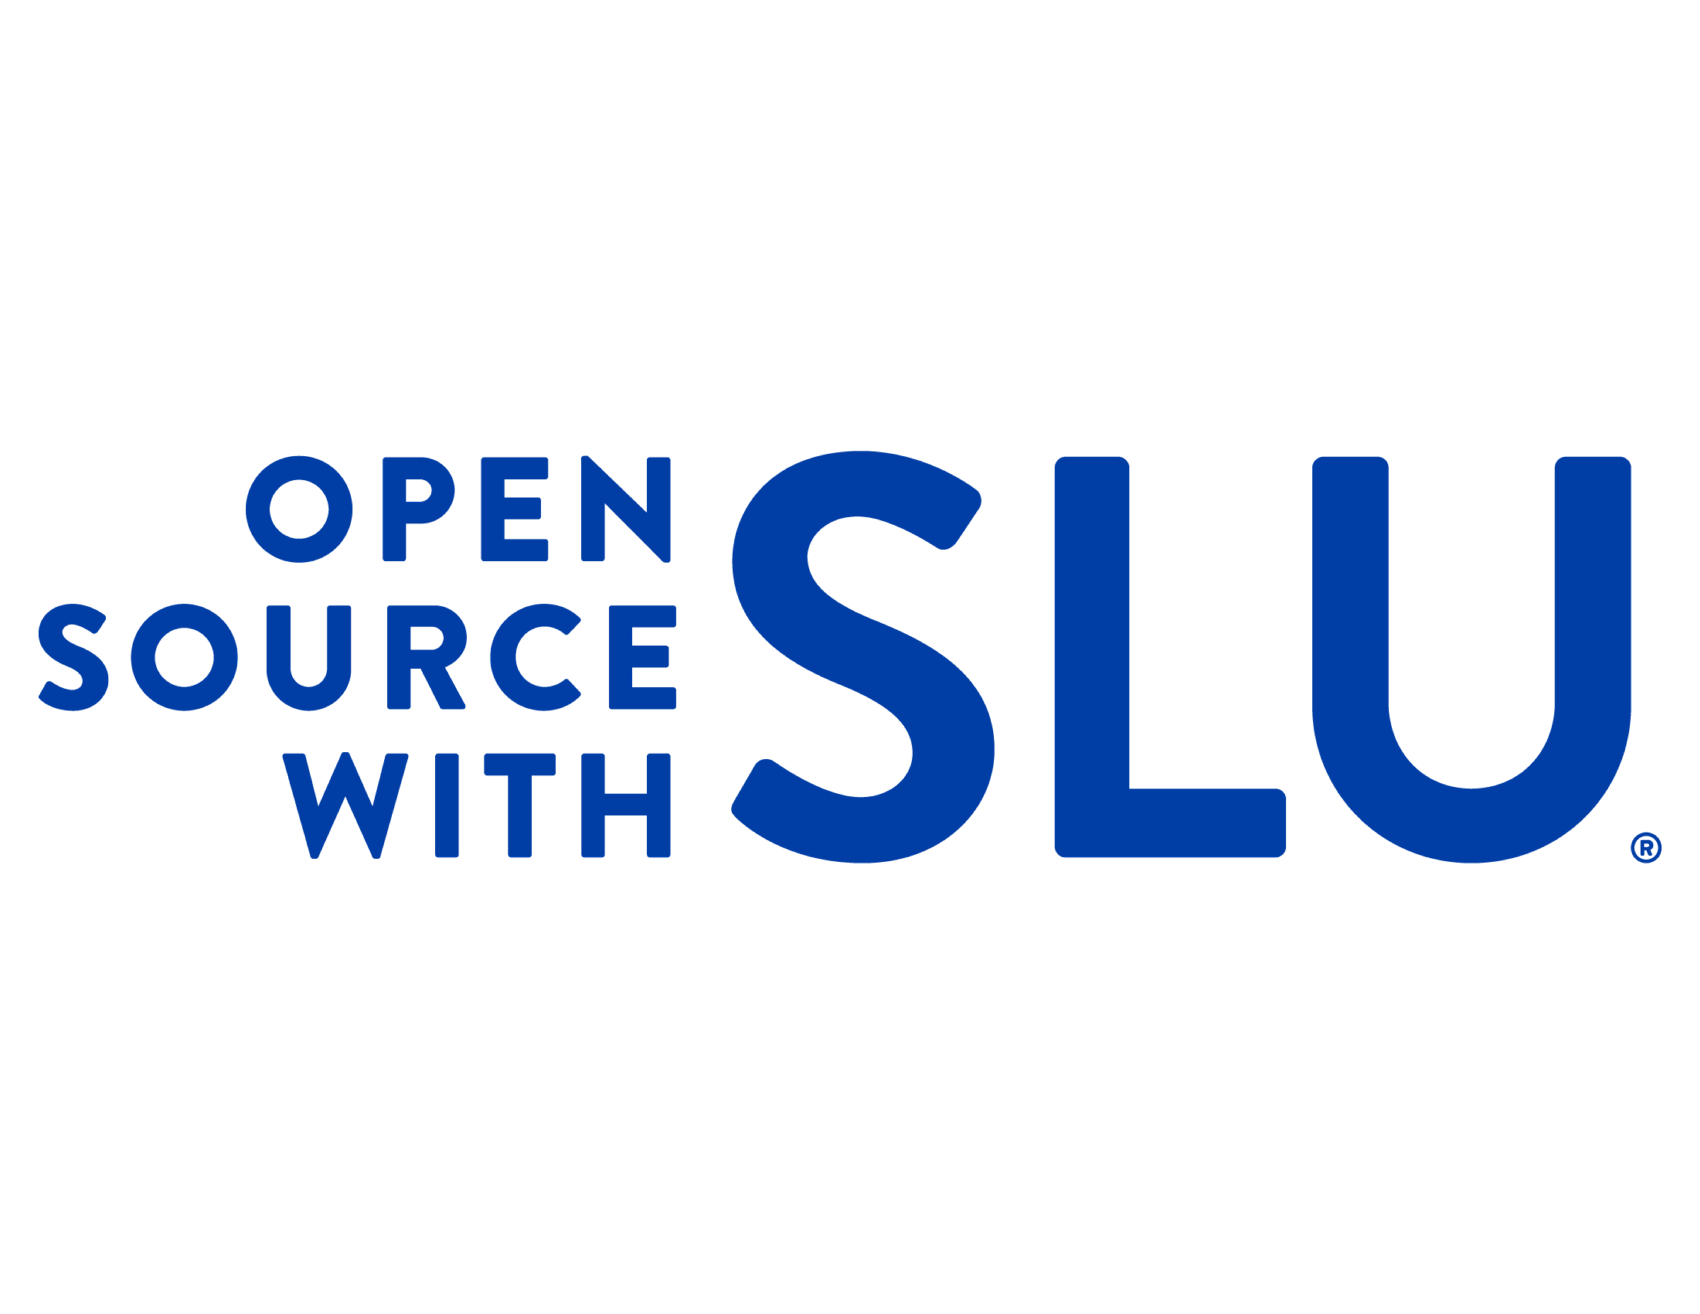 Open Source with SLU